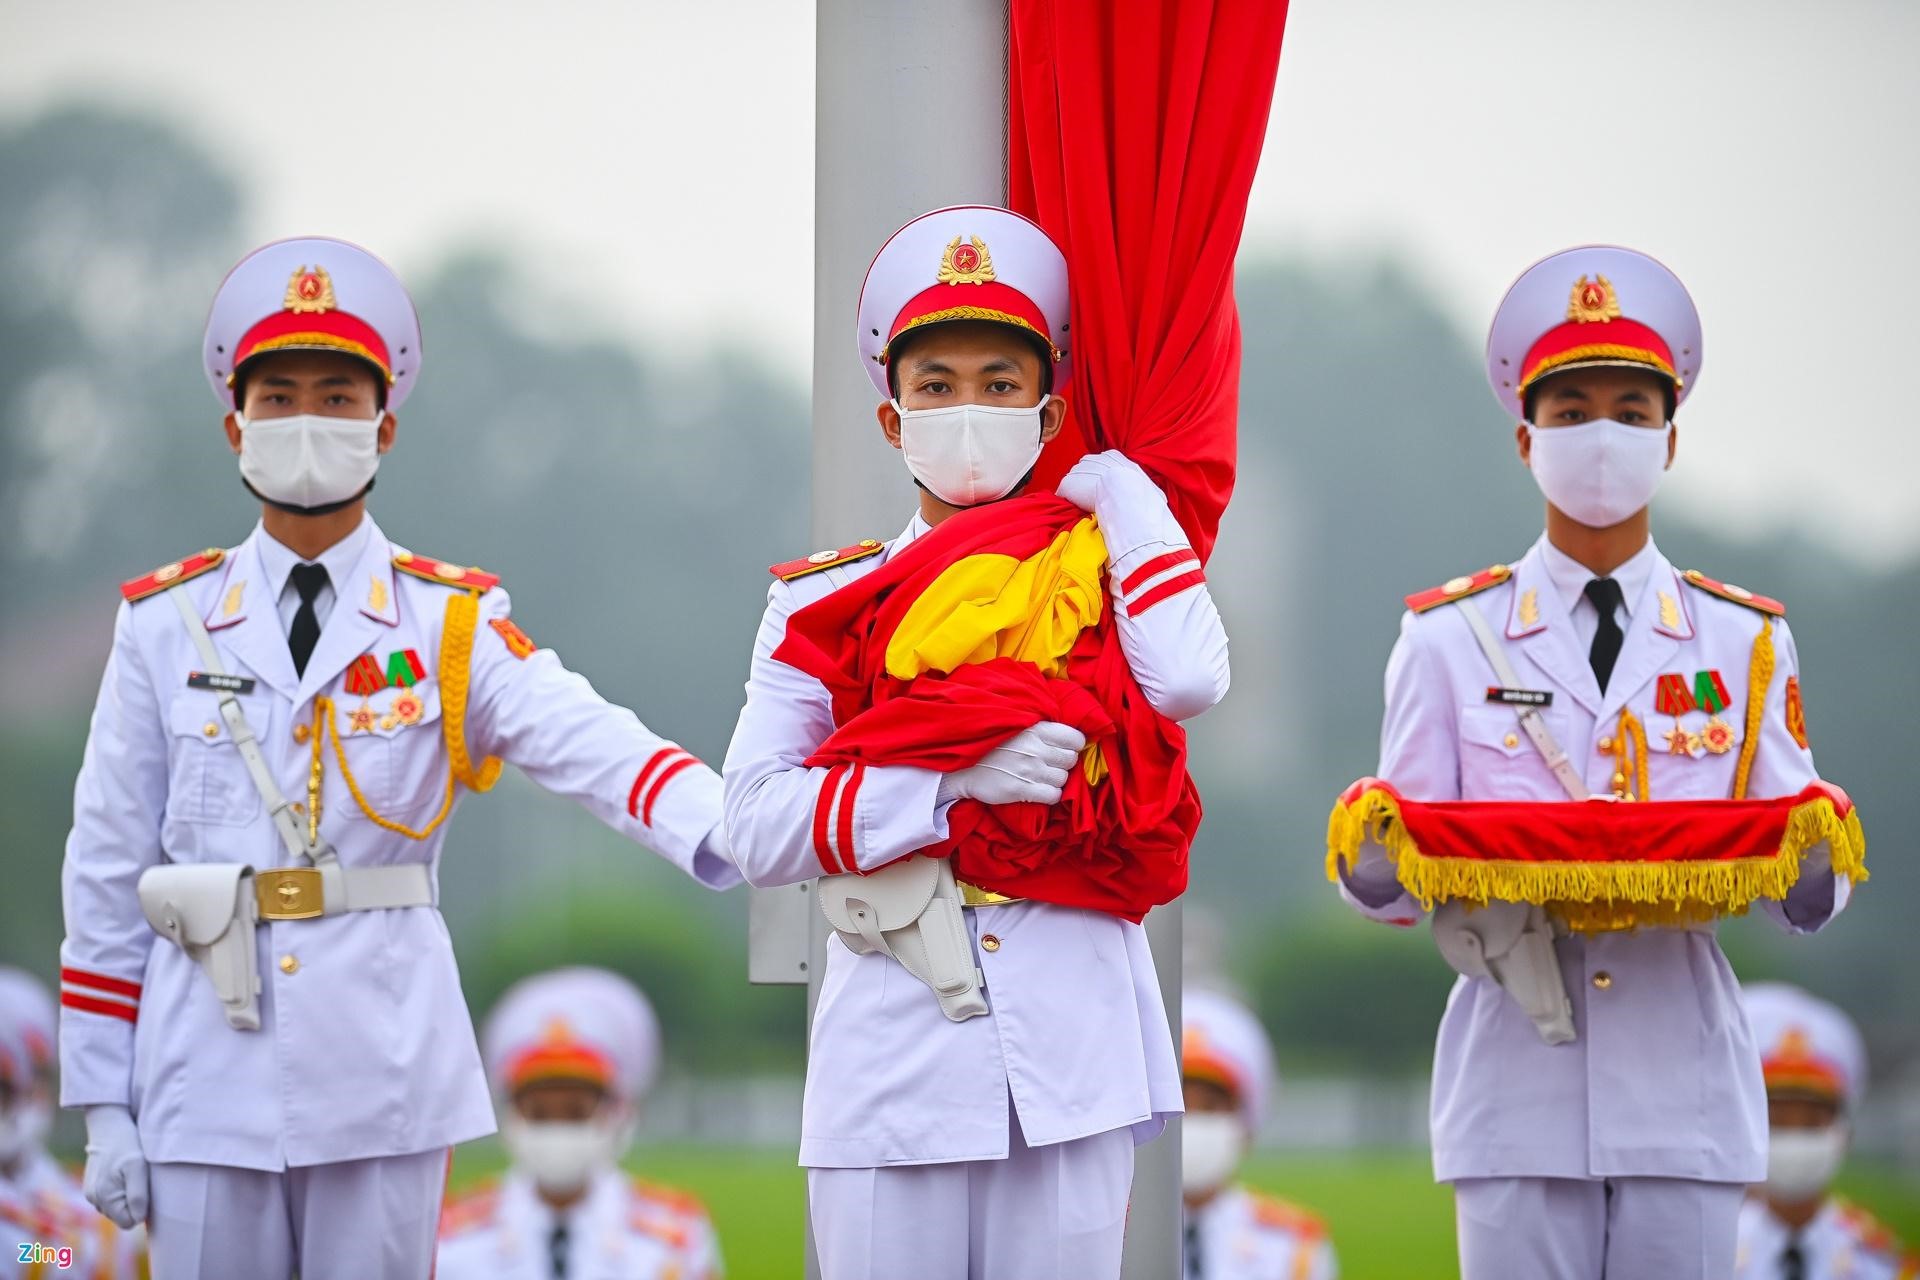 3 chiến sĩ của đội hồng kỳ nghiêm trang bước lên bục để chuẩn bị thực hiện các nghi thức chính. Lúc 5h59 phút, chiến sĩ mang Quốc kỳ treo lên cột cờ.